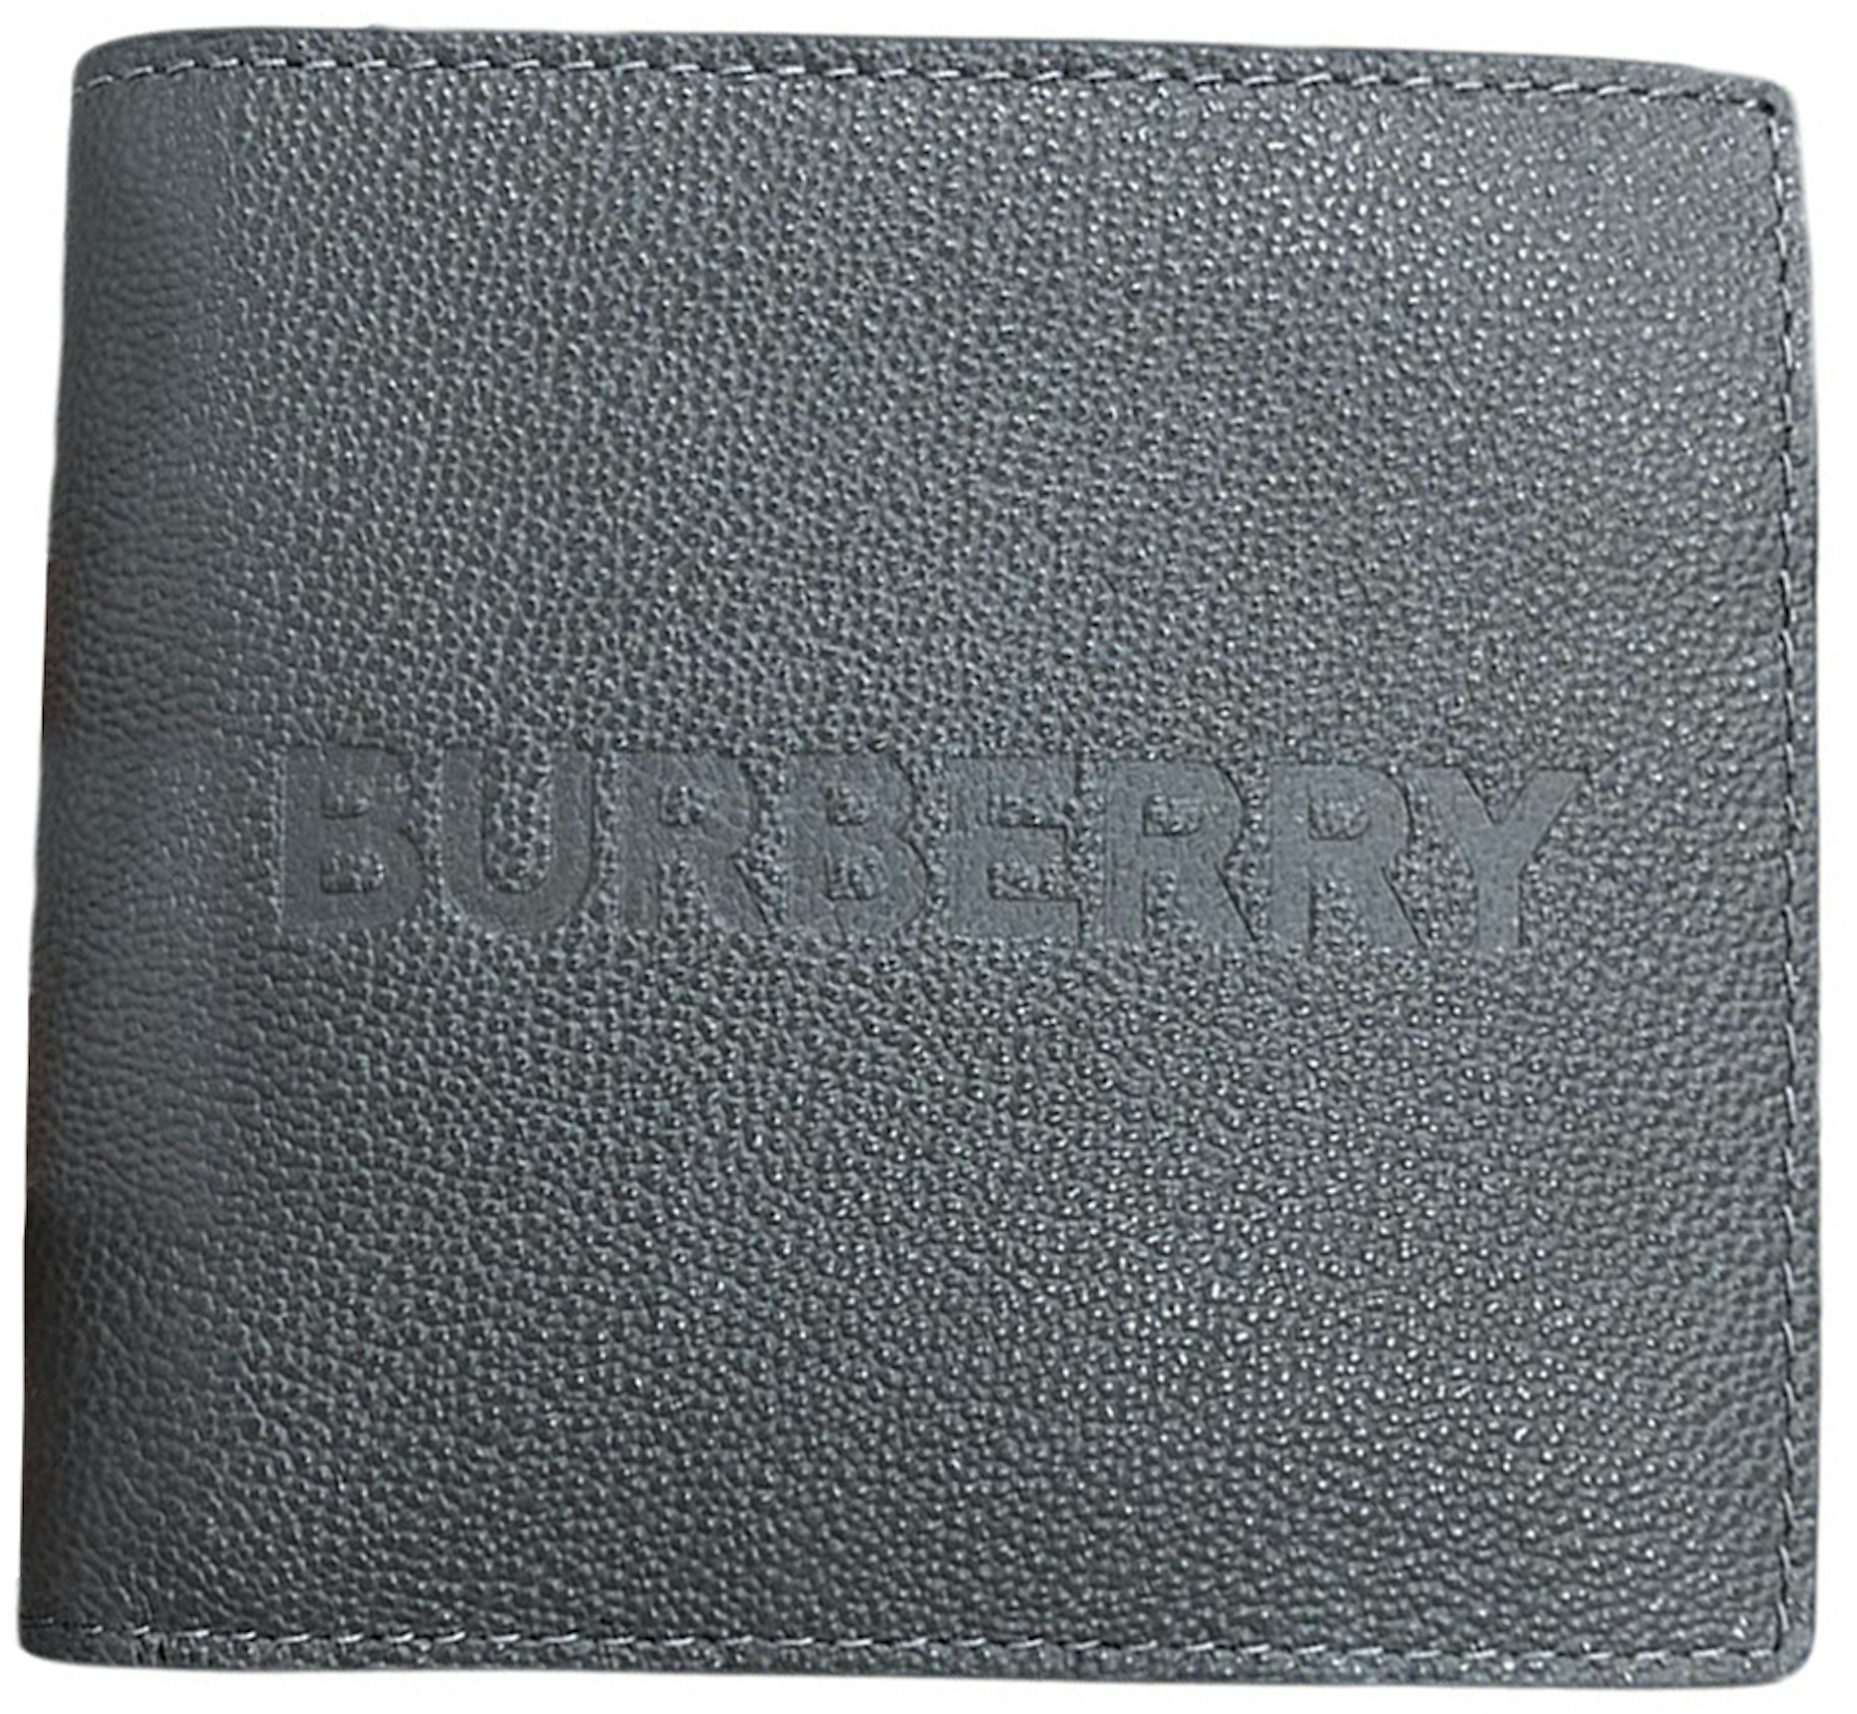 Burberry Vintage Check Money Clip Wallet - Archive Beige